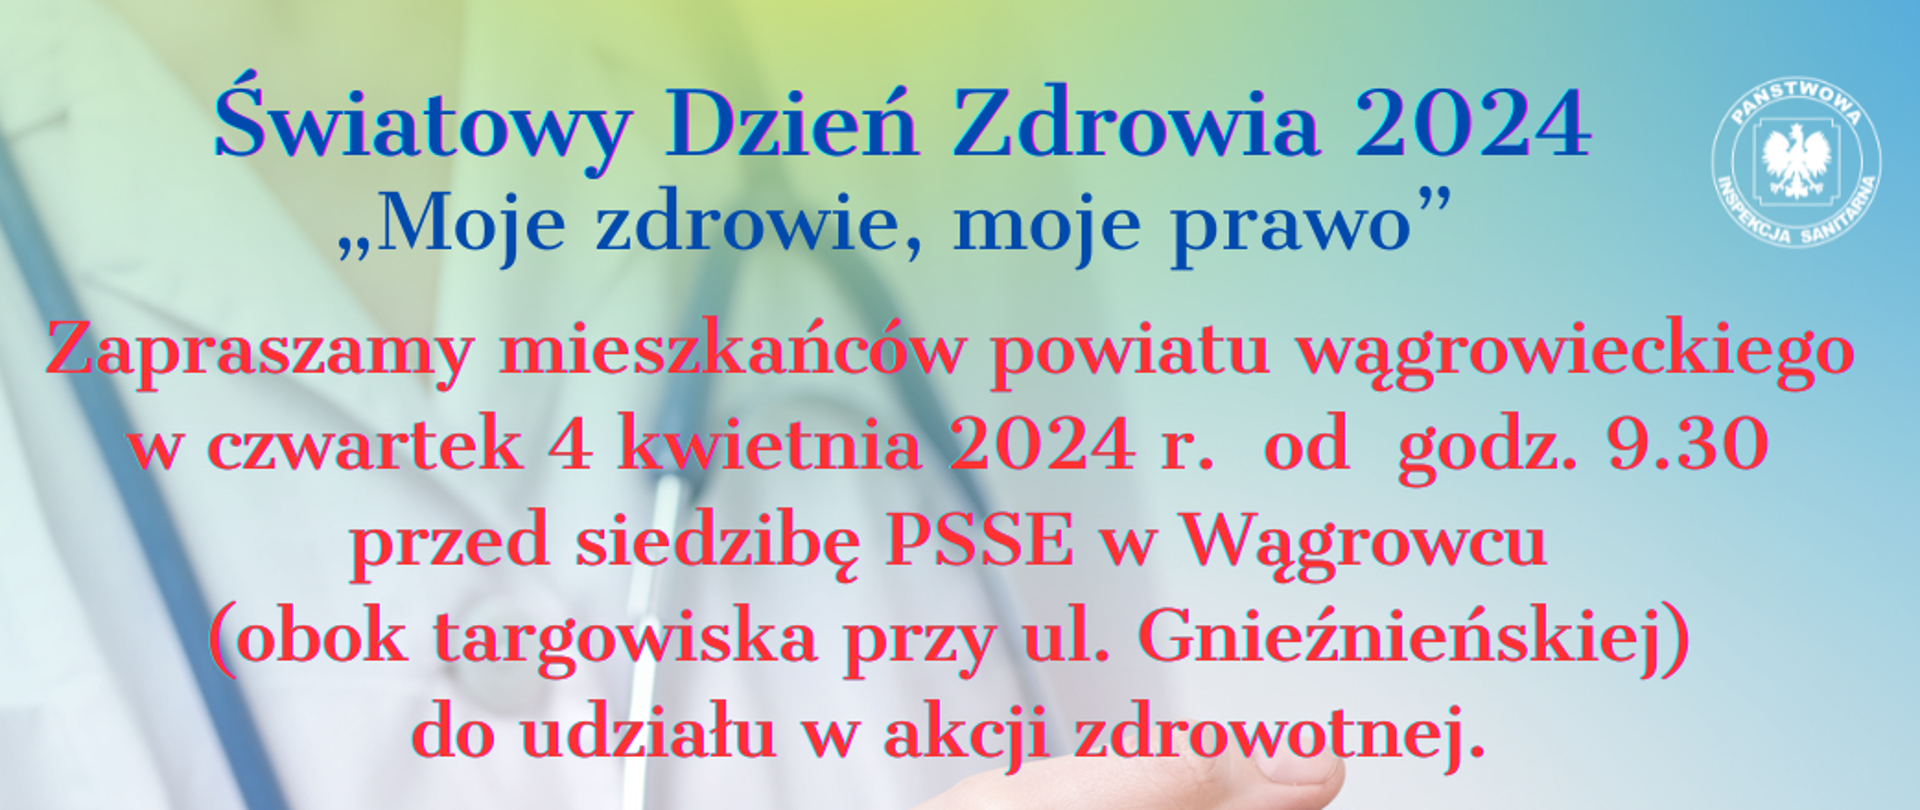 ŚDZ_2024_internet_zaproszenie